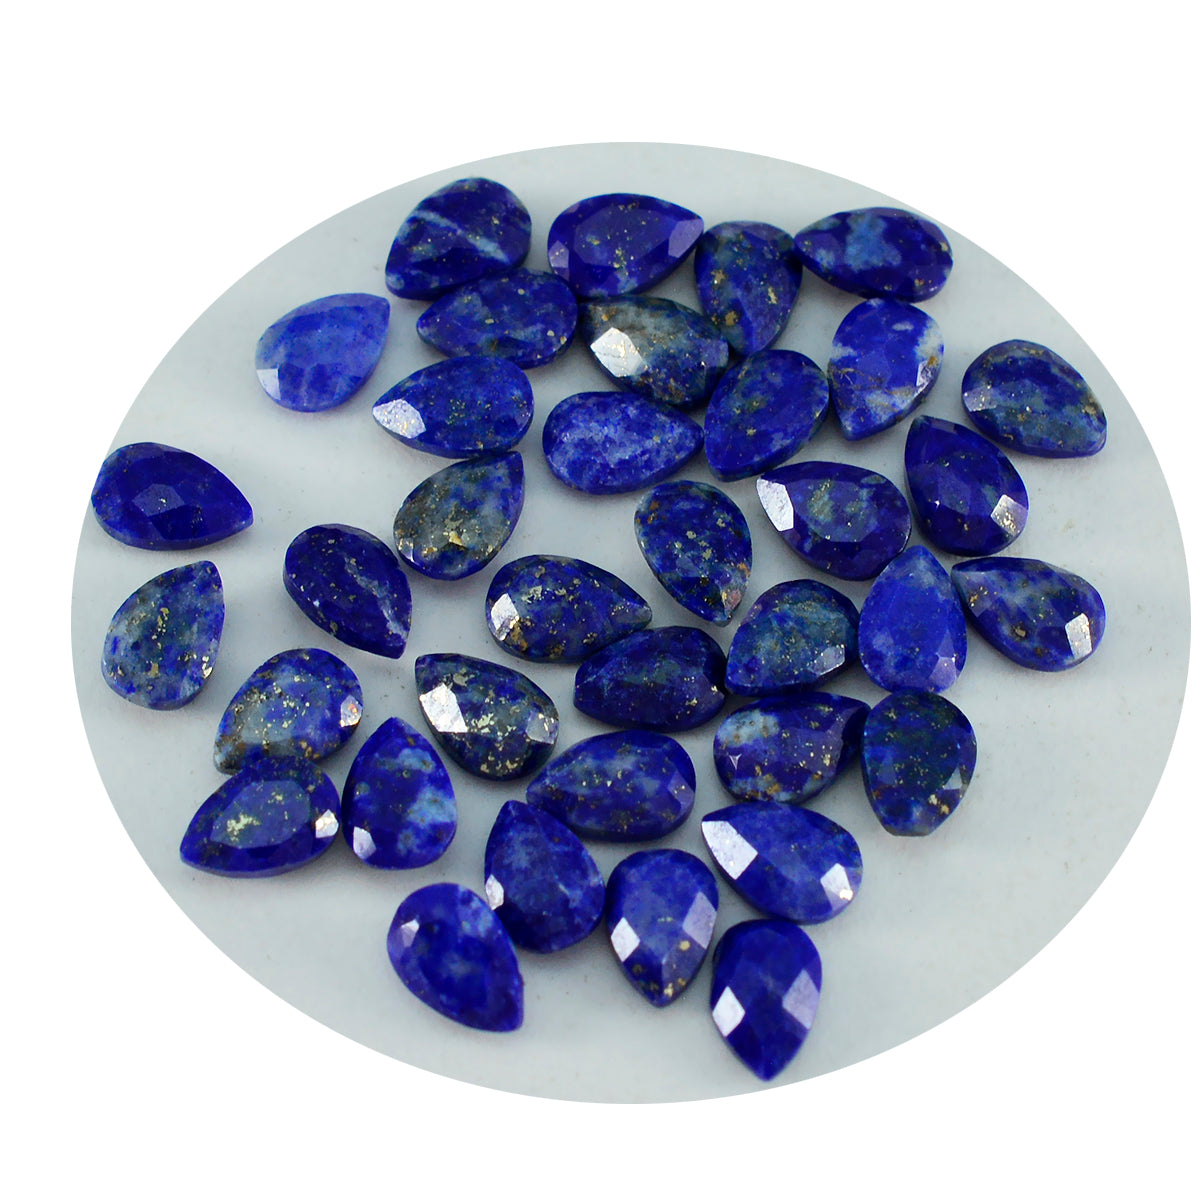 Riyogems 1 pièce de lapis-lazuli bleu véritable à facettes 3x5mm en forme de poire, pierres précieuses de grande qualité